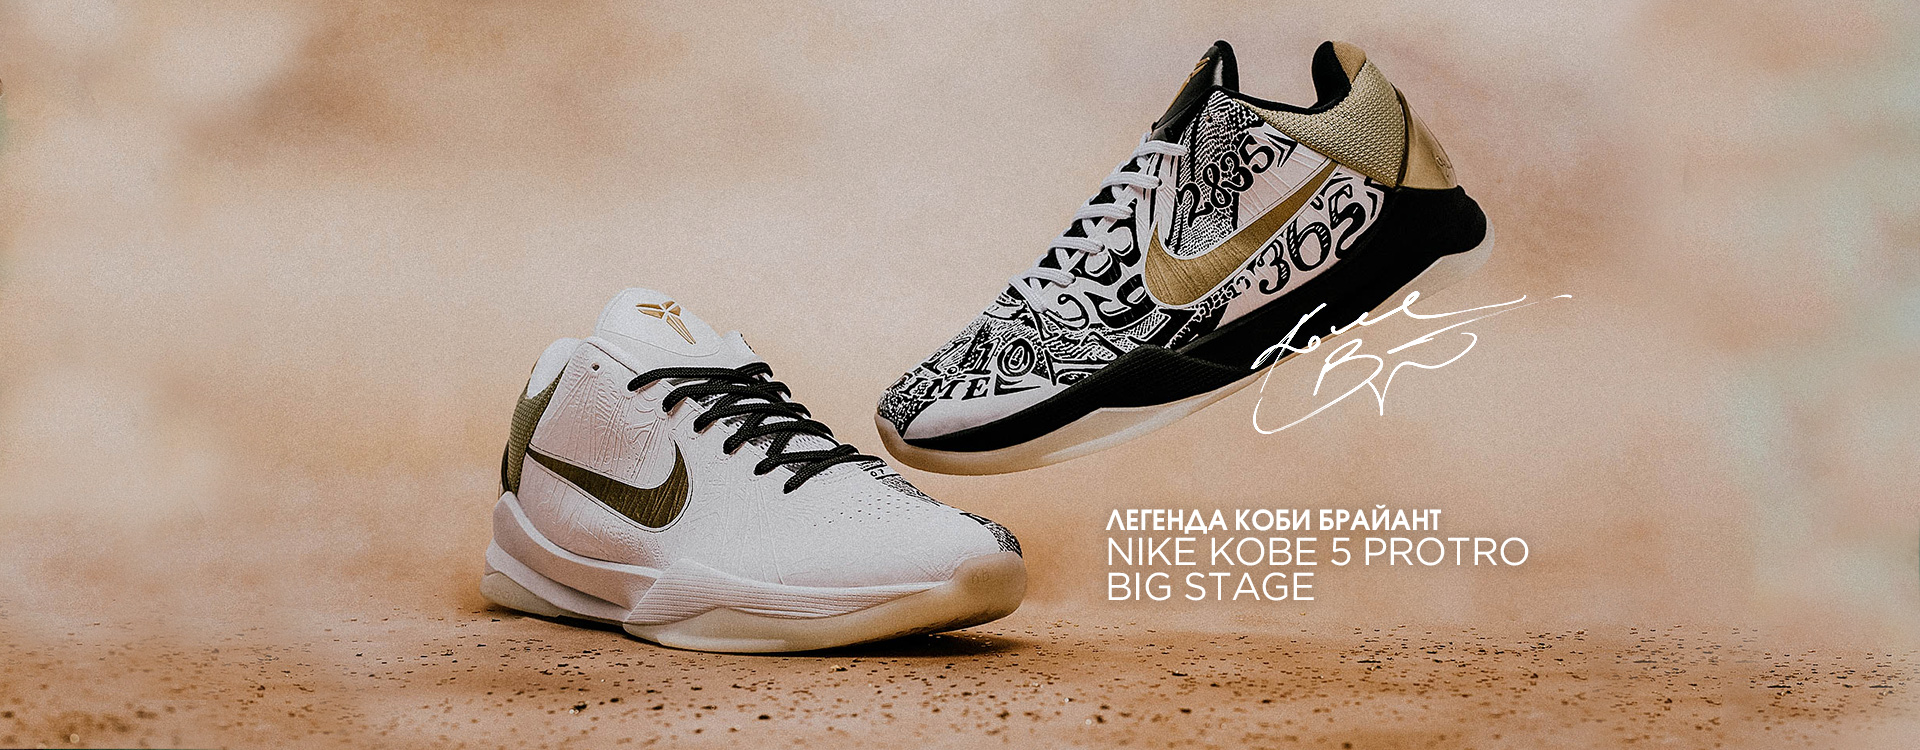 Кроссовки Nike Kobe 5 Protro «Big Stage»